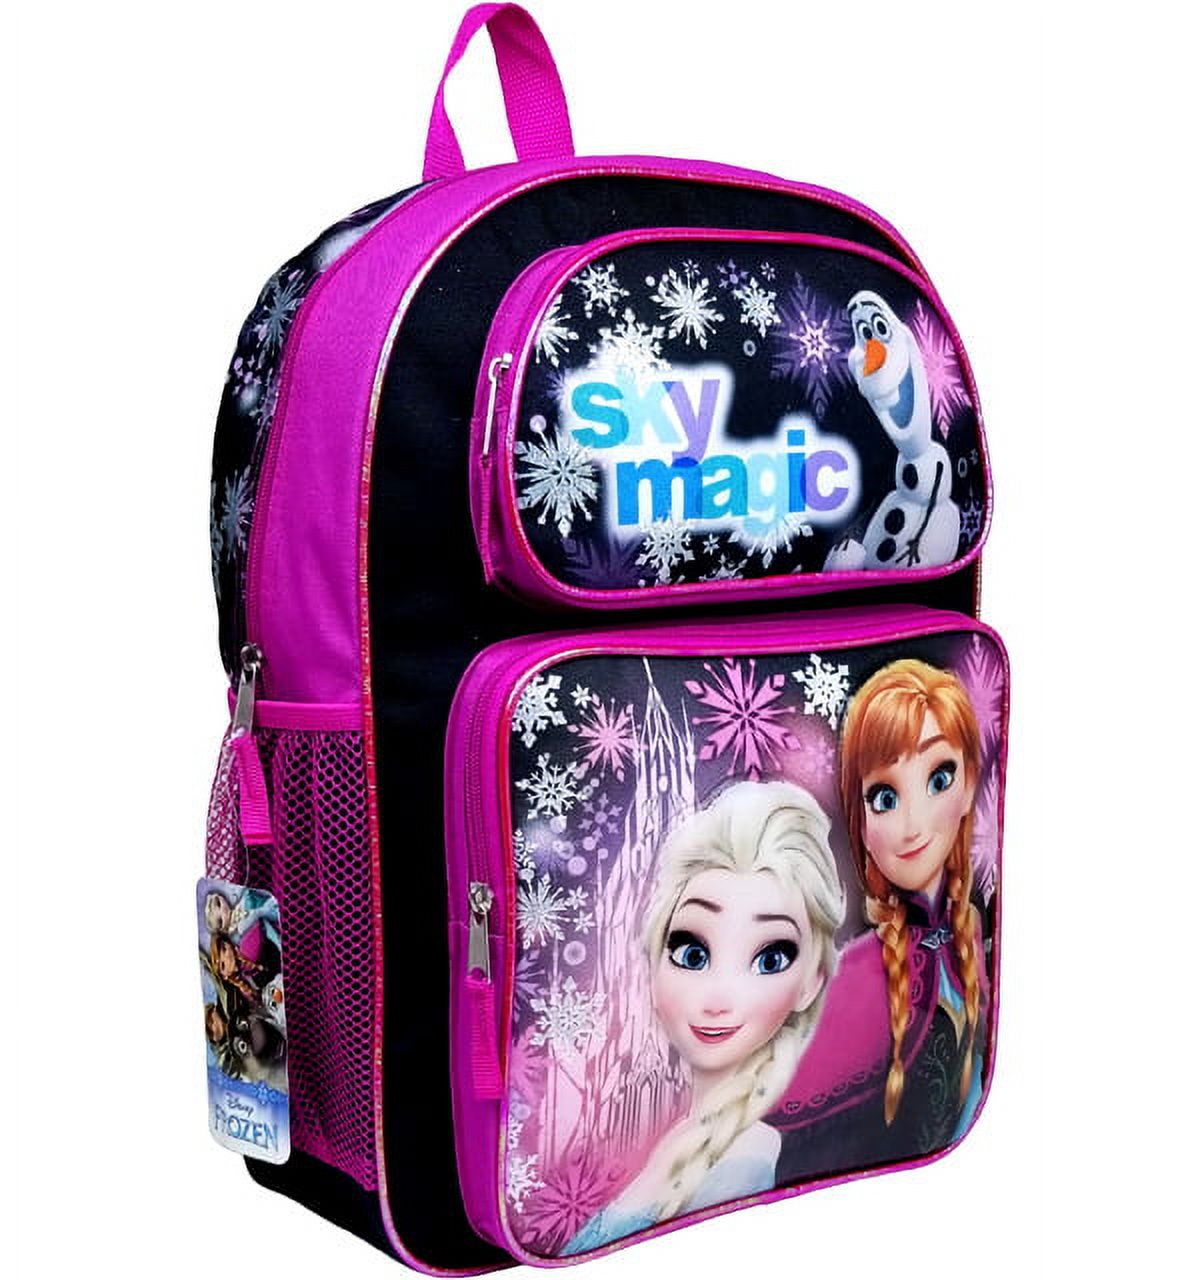 Disney Frozen Sky Magic Black Girls Large Backpack/School Book Bag for Kids - image 3 of 3